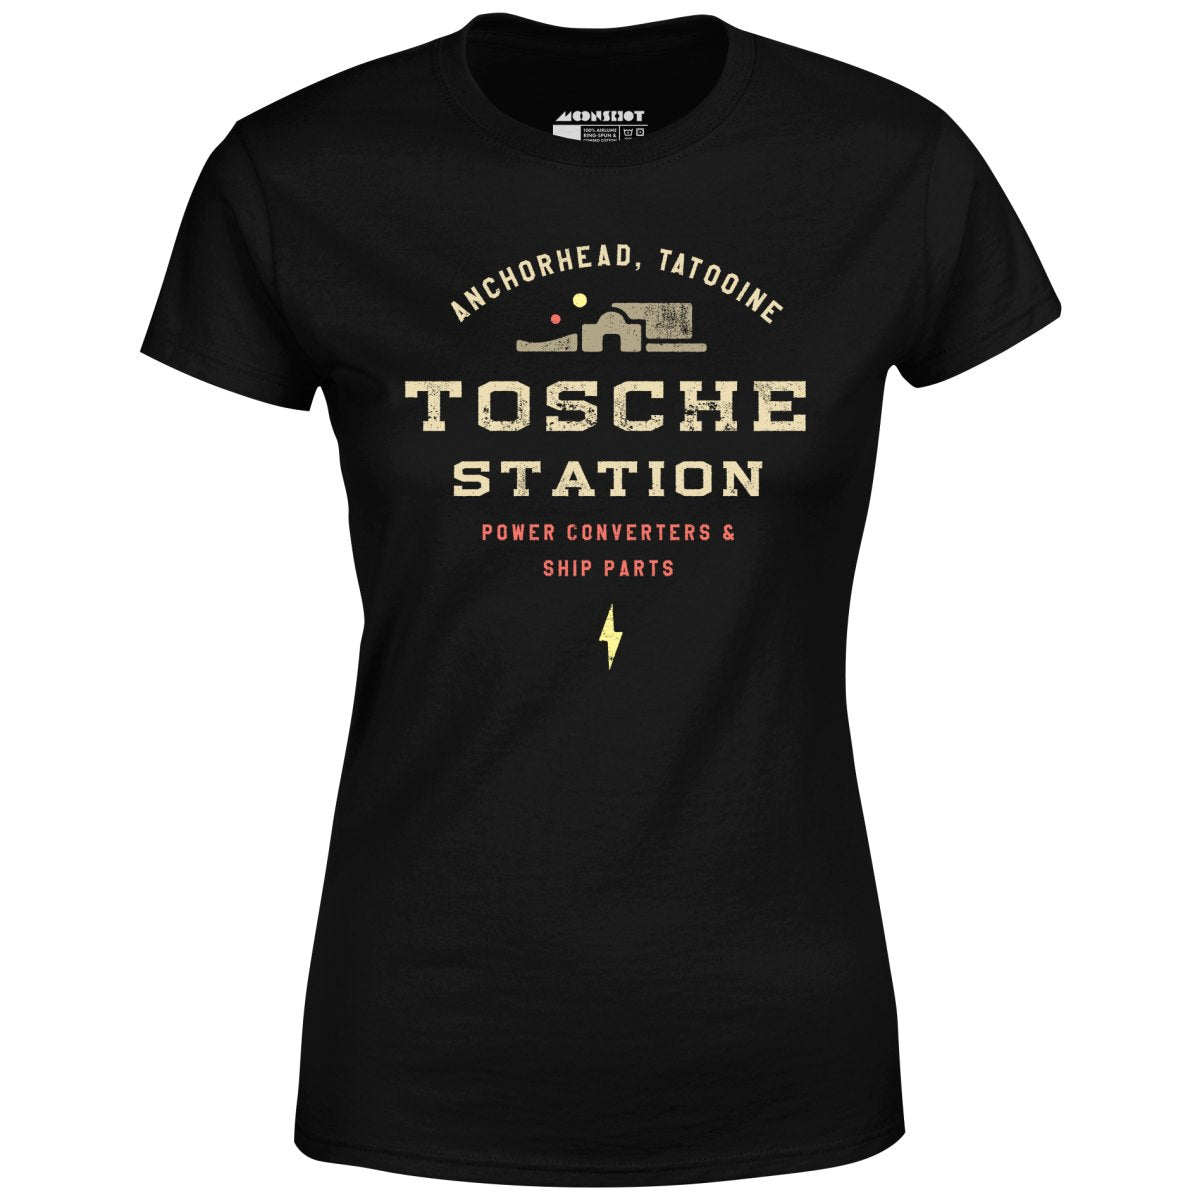 Tosche Station - Women's T-Shirt